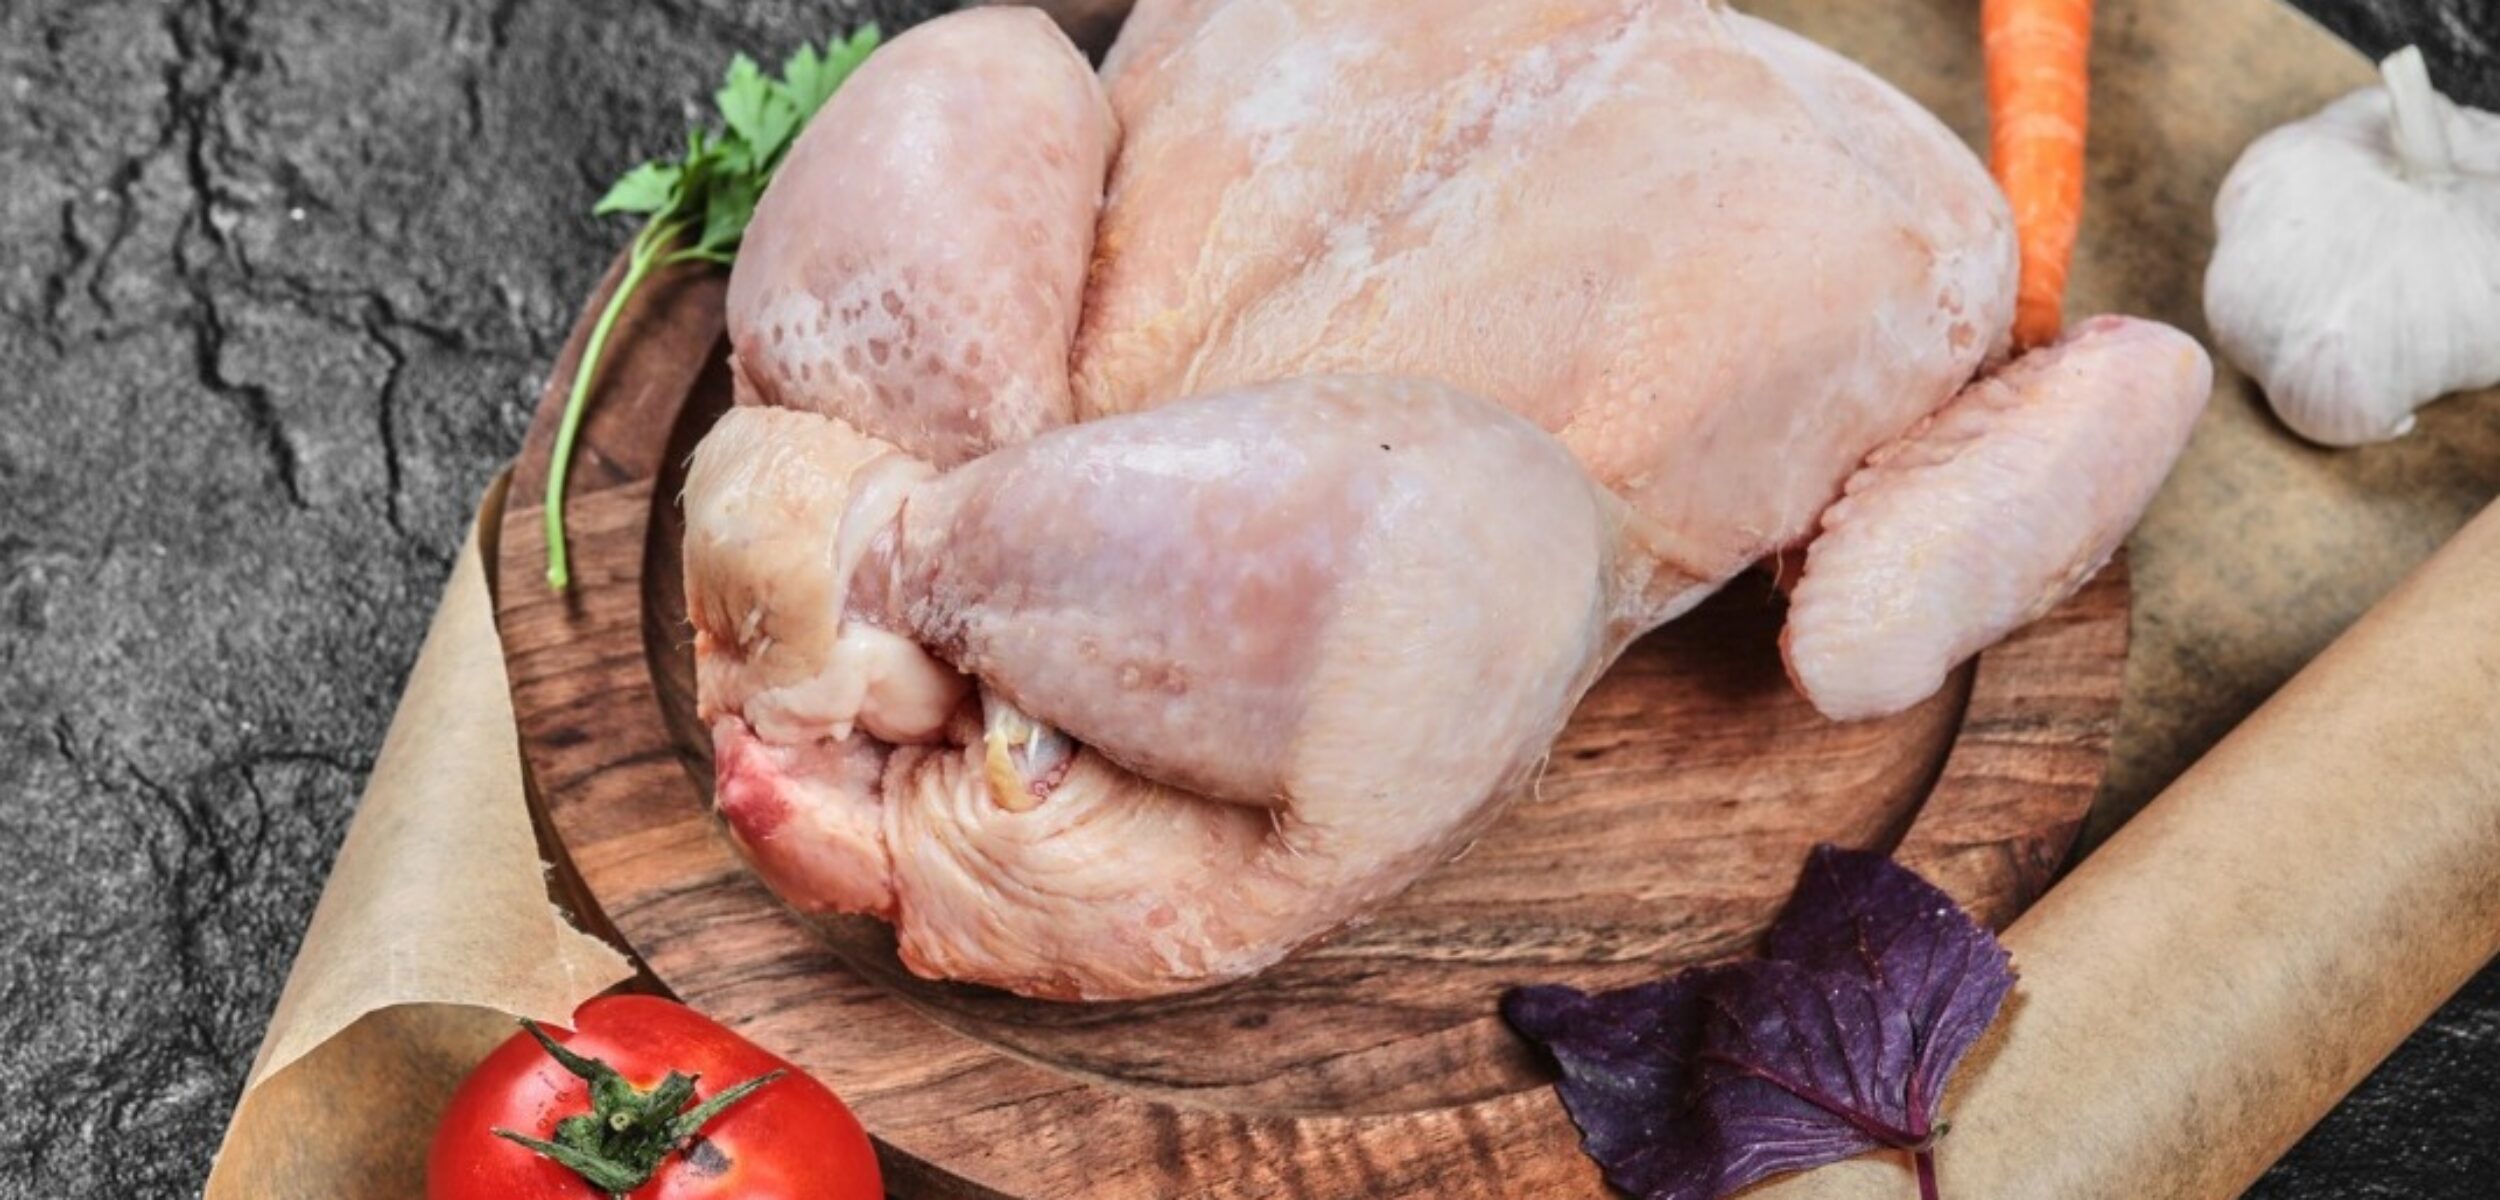 Harga Bahan Pokok di Mojokerto Hari Ini: Daging Ayam Kampung Naik 15 Persen